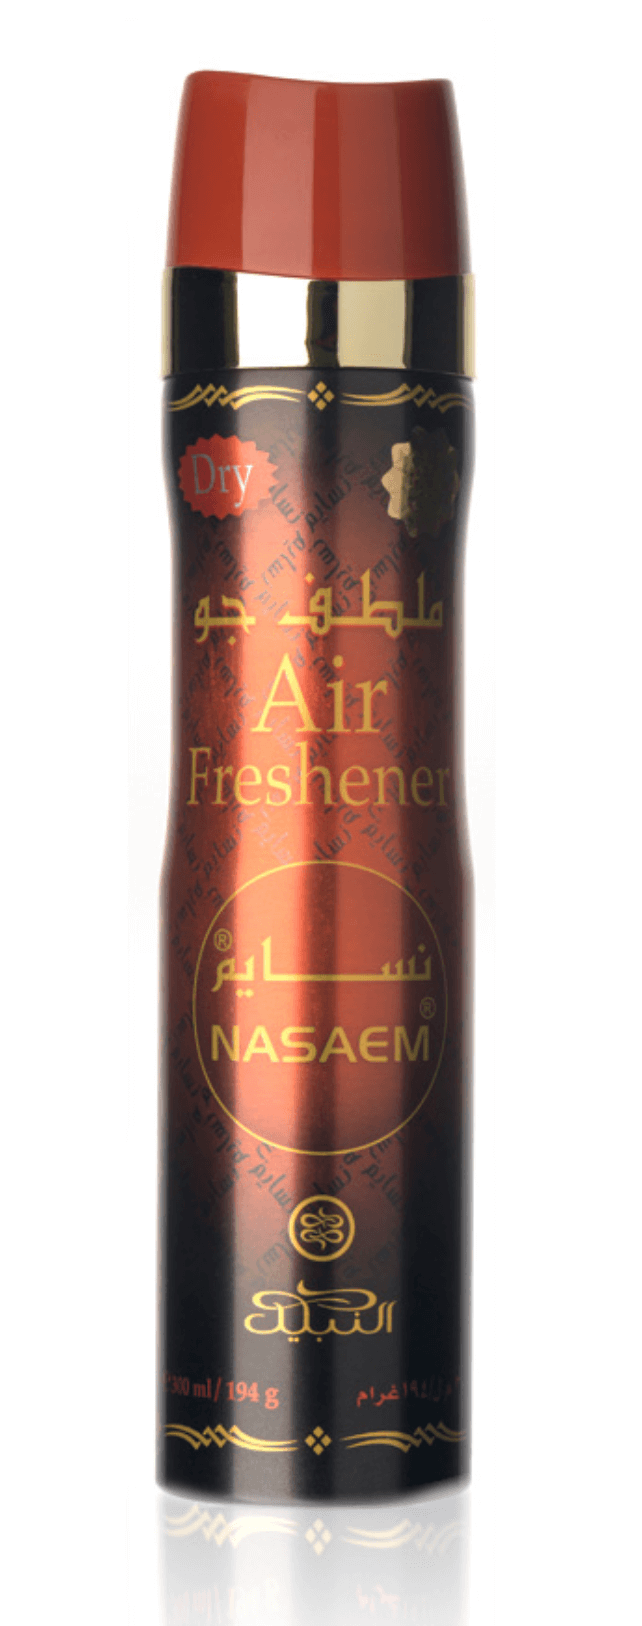 Nasaem (Air Freshener) - 300 ml